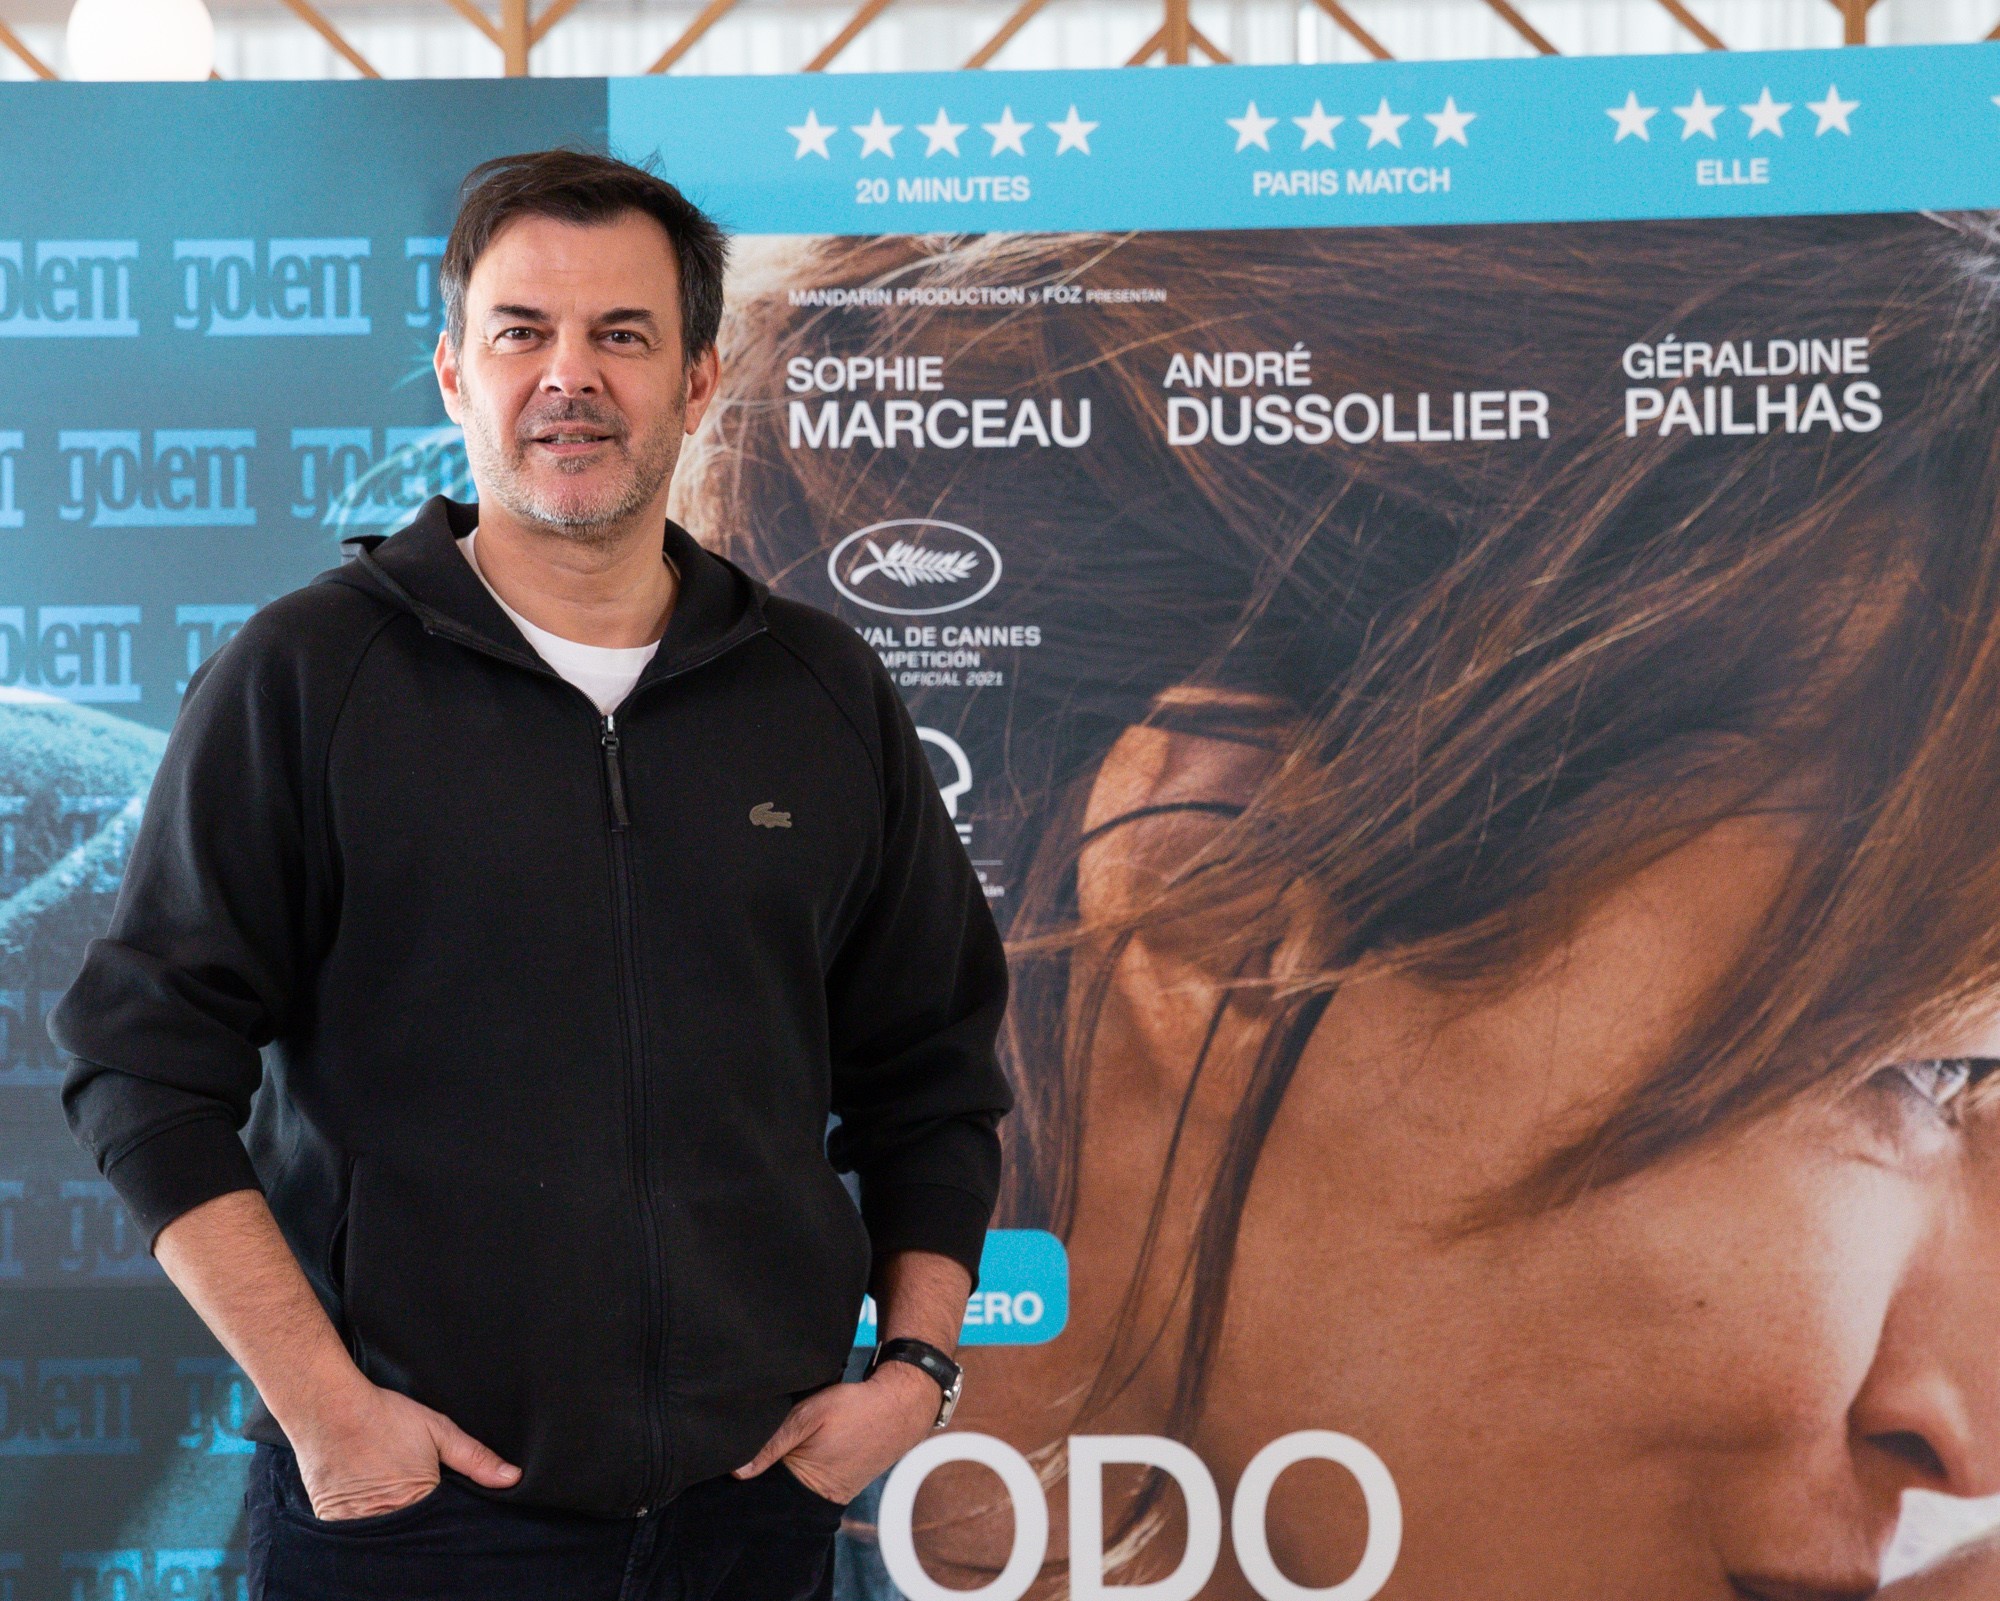 François Ozon dirige Todo ha ido bien: "El cine está para plantear preguntas, no para dar respuestas"